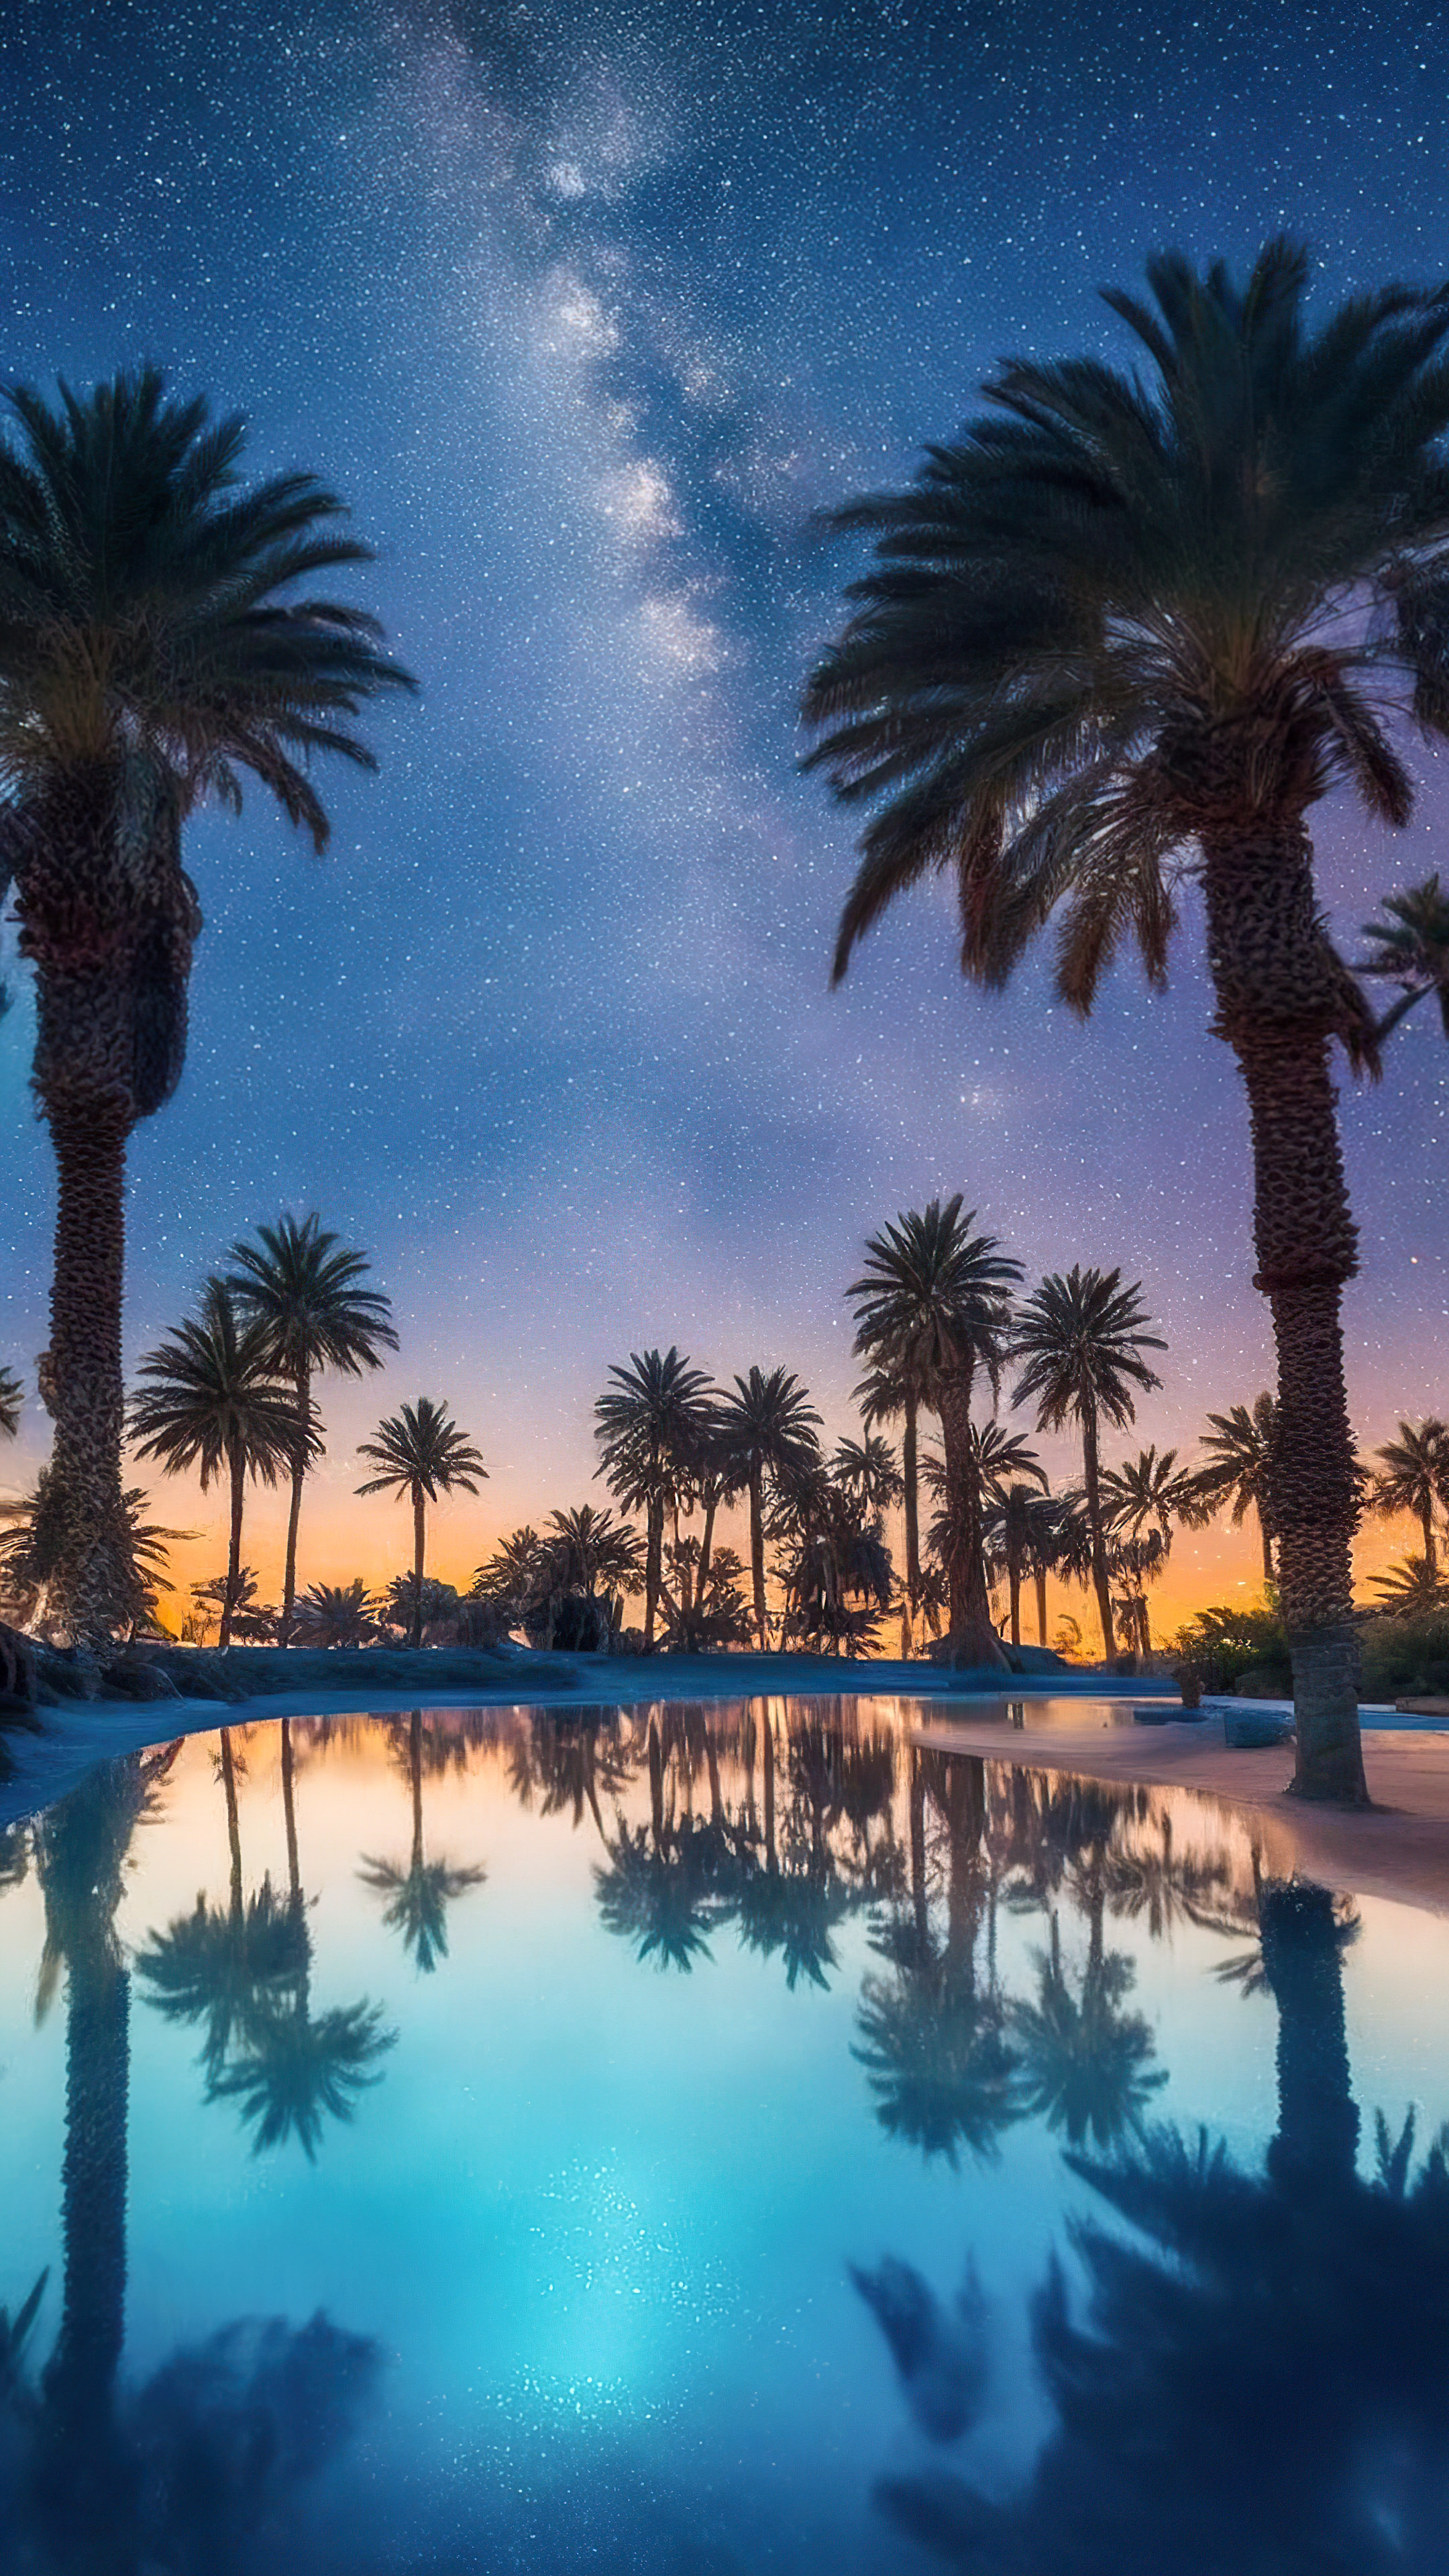 Émerveillez-vous devant la merveille de notre fond d'écran de ciel étoilé, capturant une oasis désertique sous la Voie lactée, où des palmiers entourent une piscine sereine et étoilée.